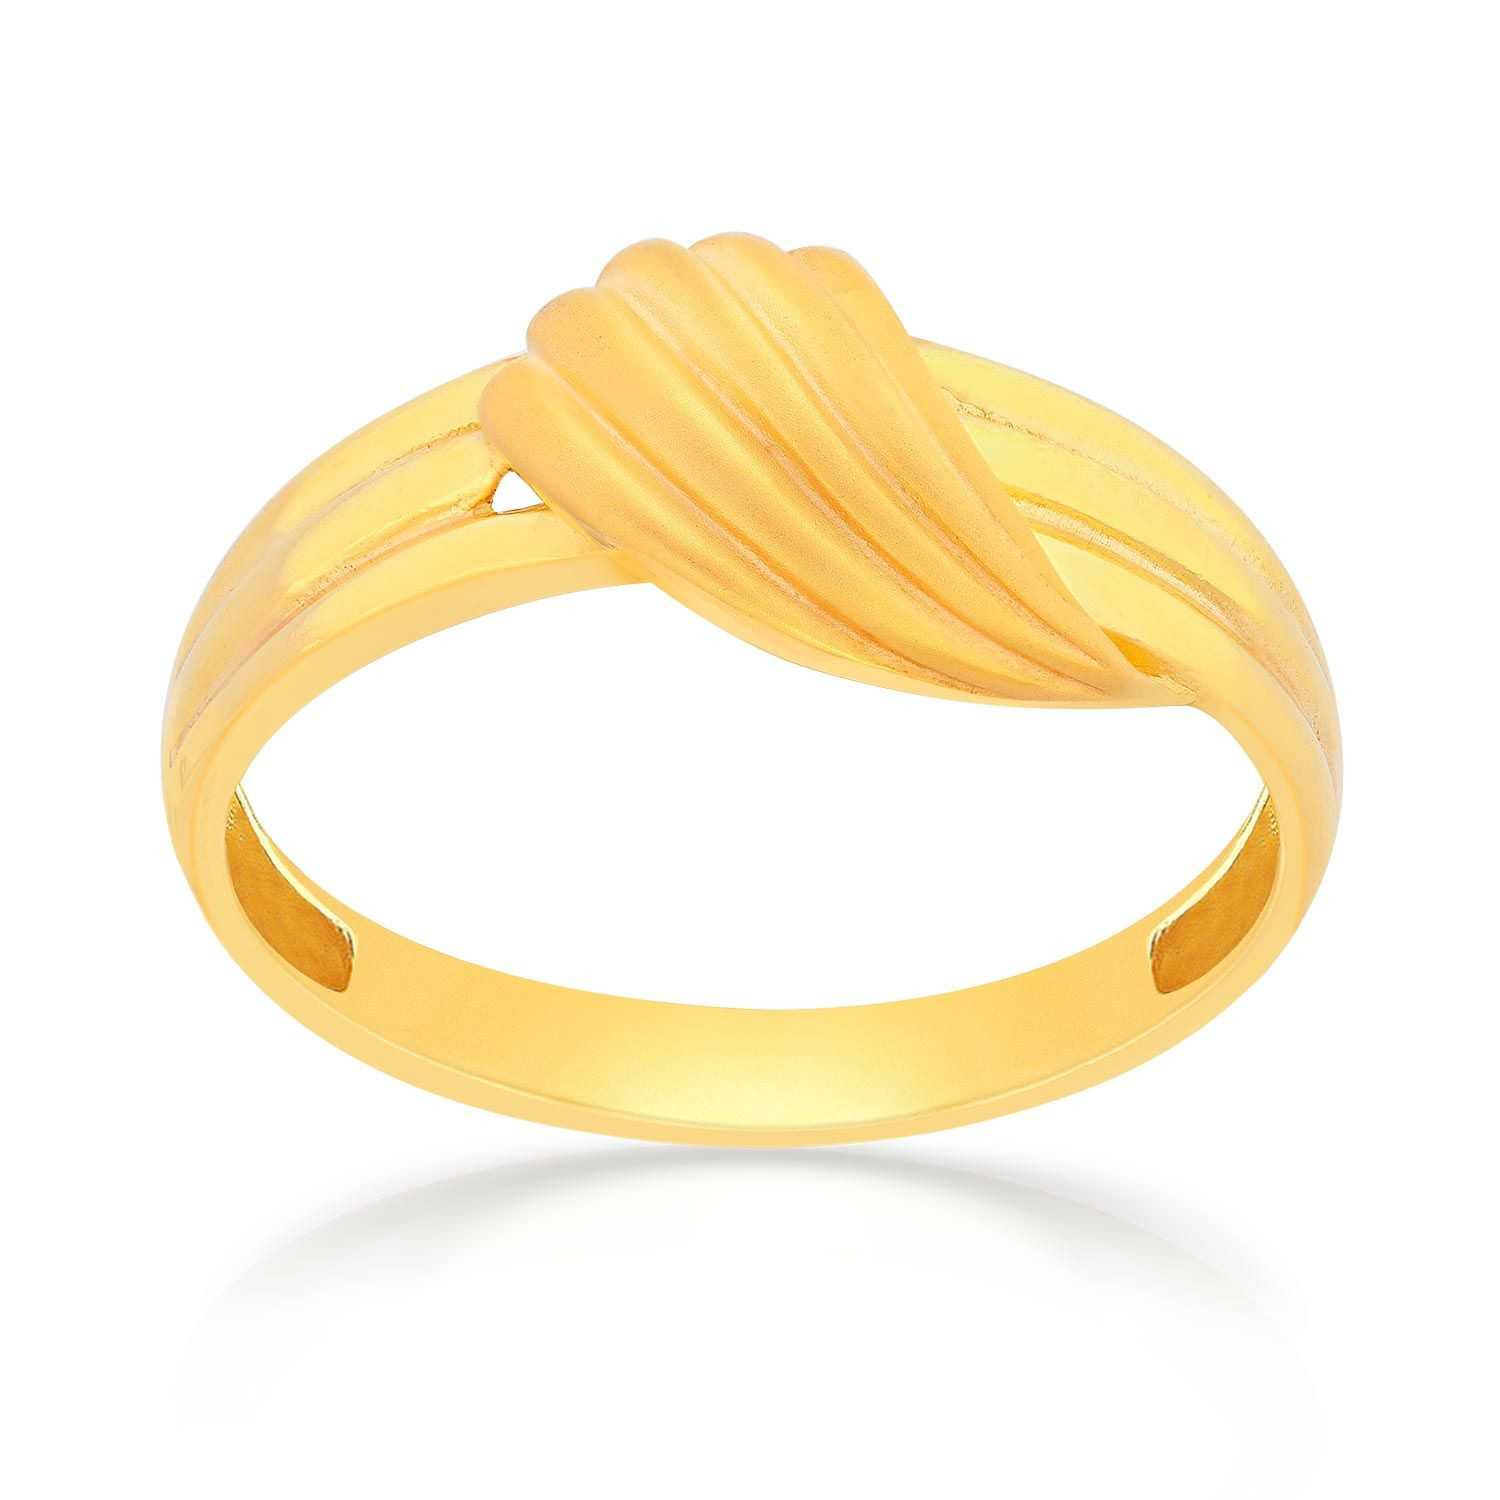 Malabar Gold Ring SKYFRDZ013